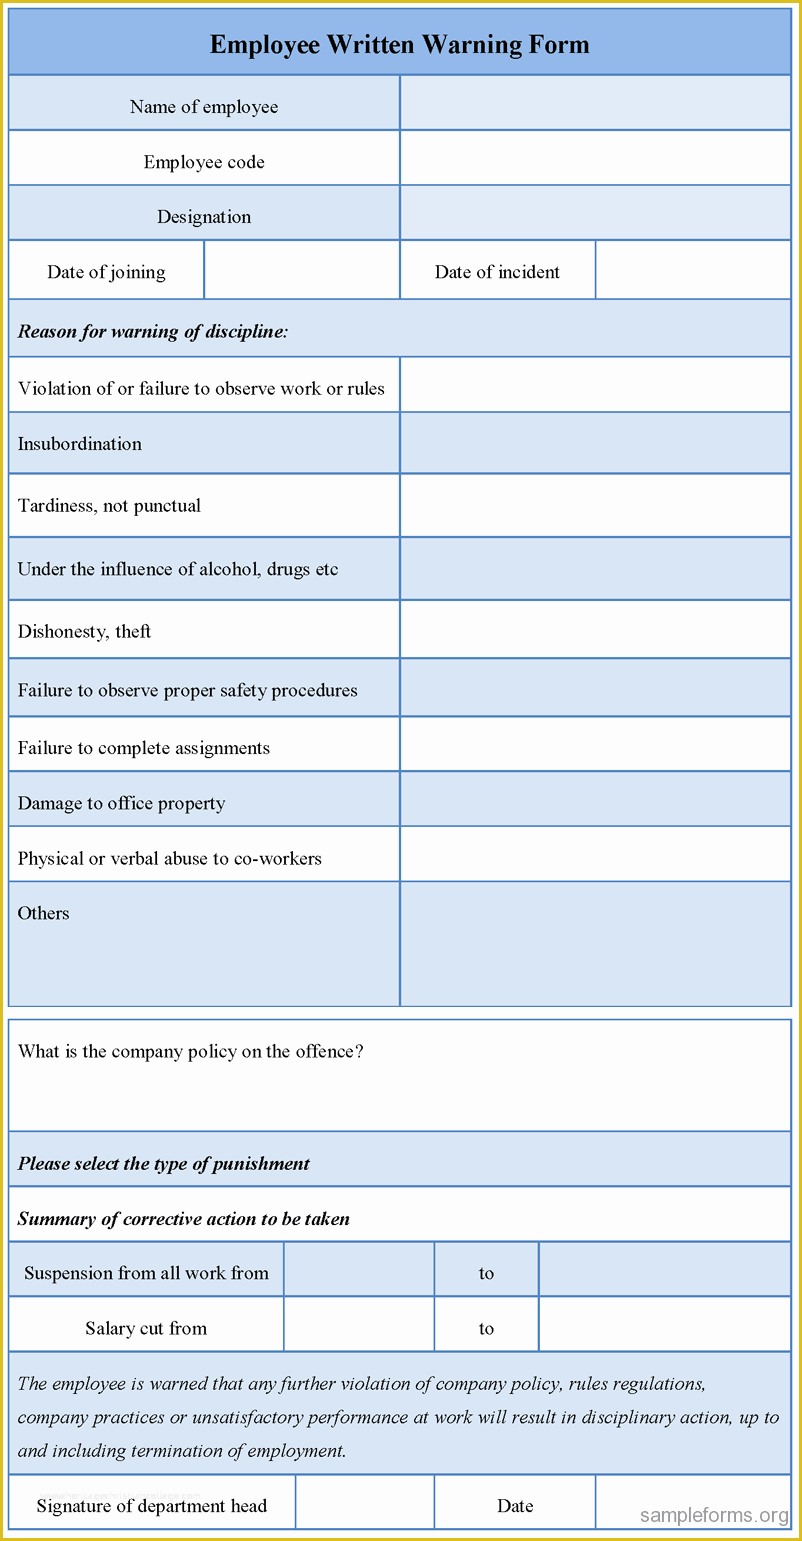 Employee Written Warning Template Free Of Employee Written Warning form Sample forms